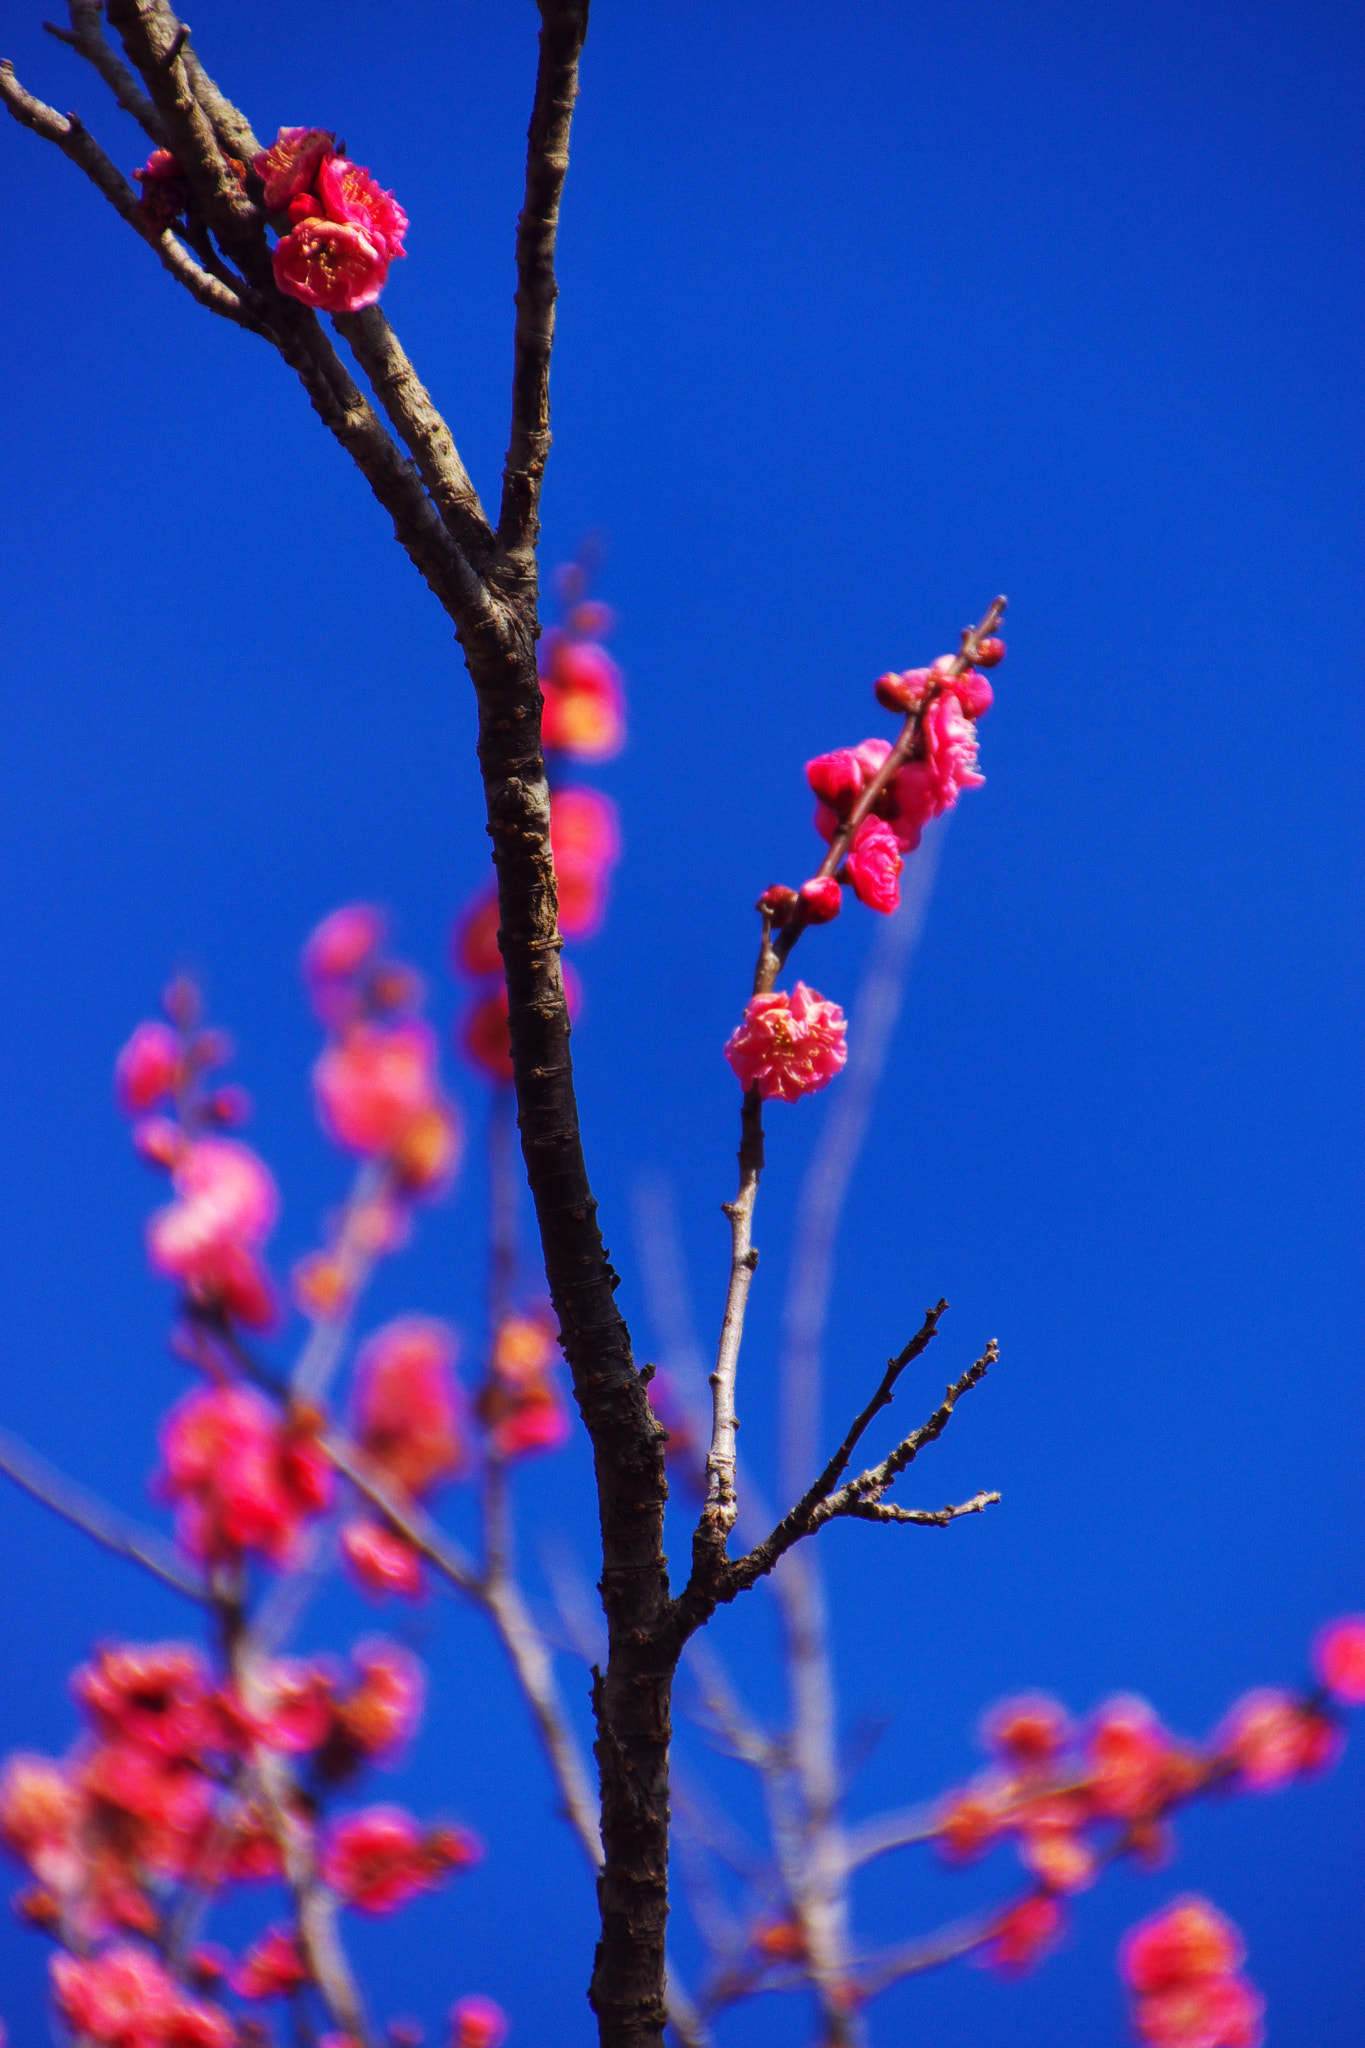 Sony SLT-A65 (SLT-A65V) sample photo. A red ume blossom photography